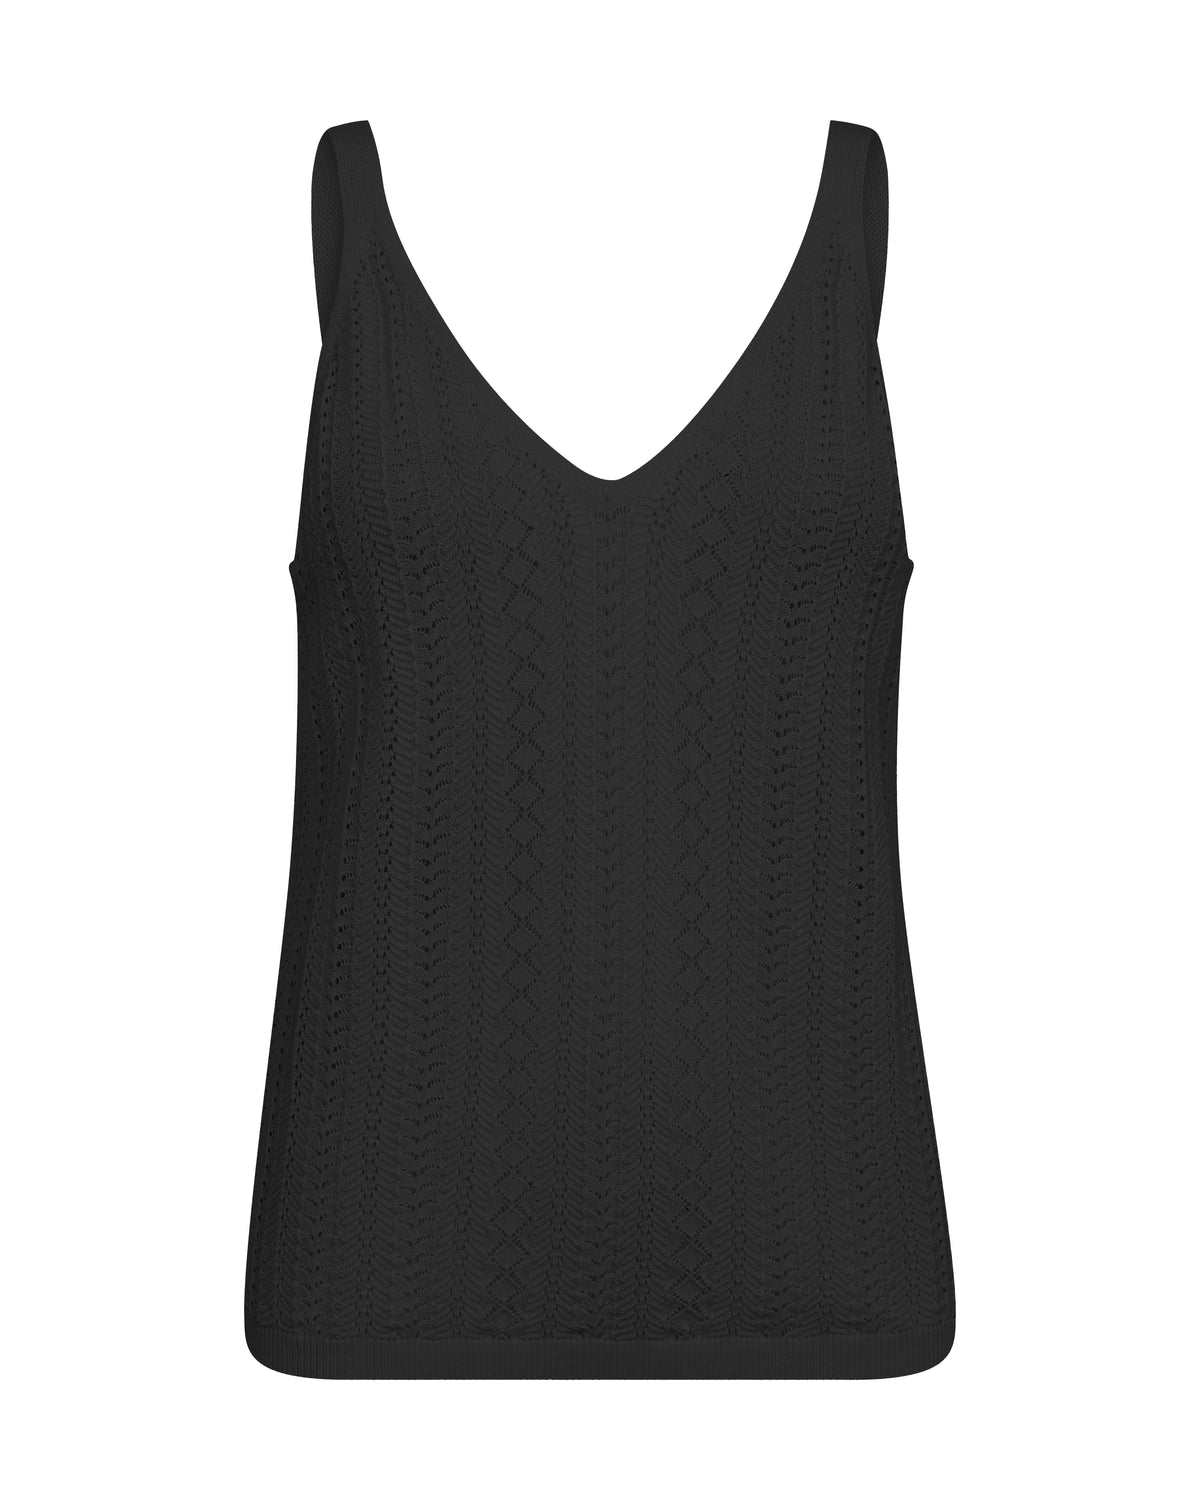 Crochet vest top in black